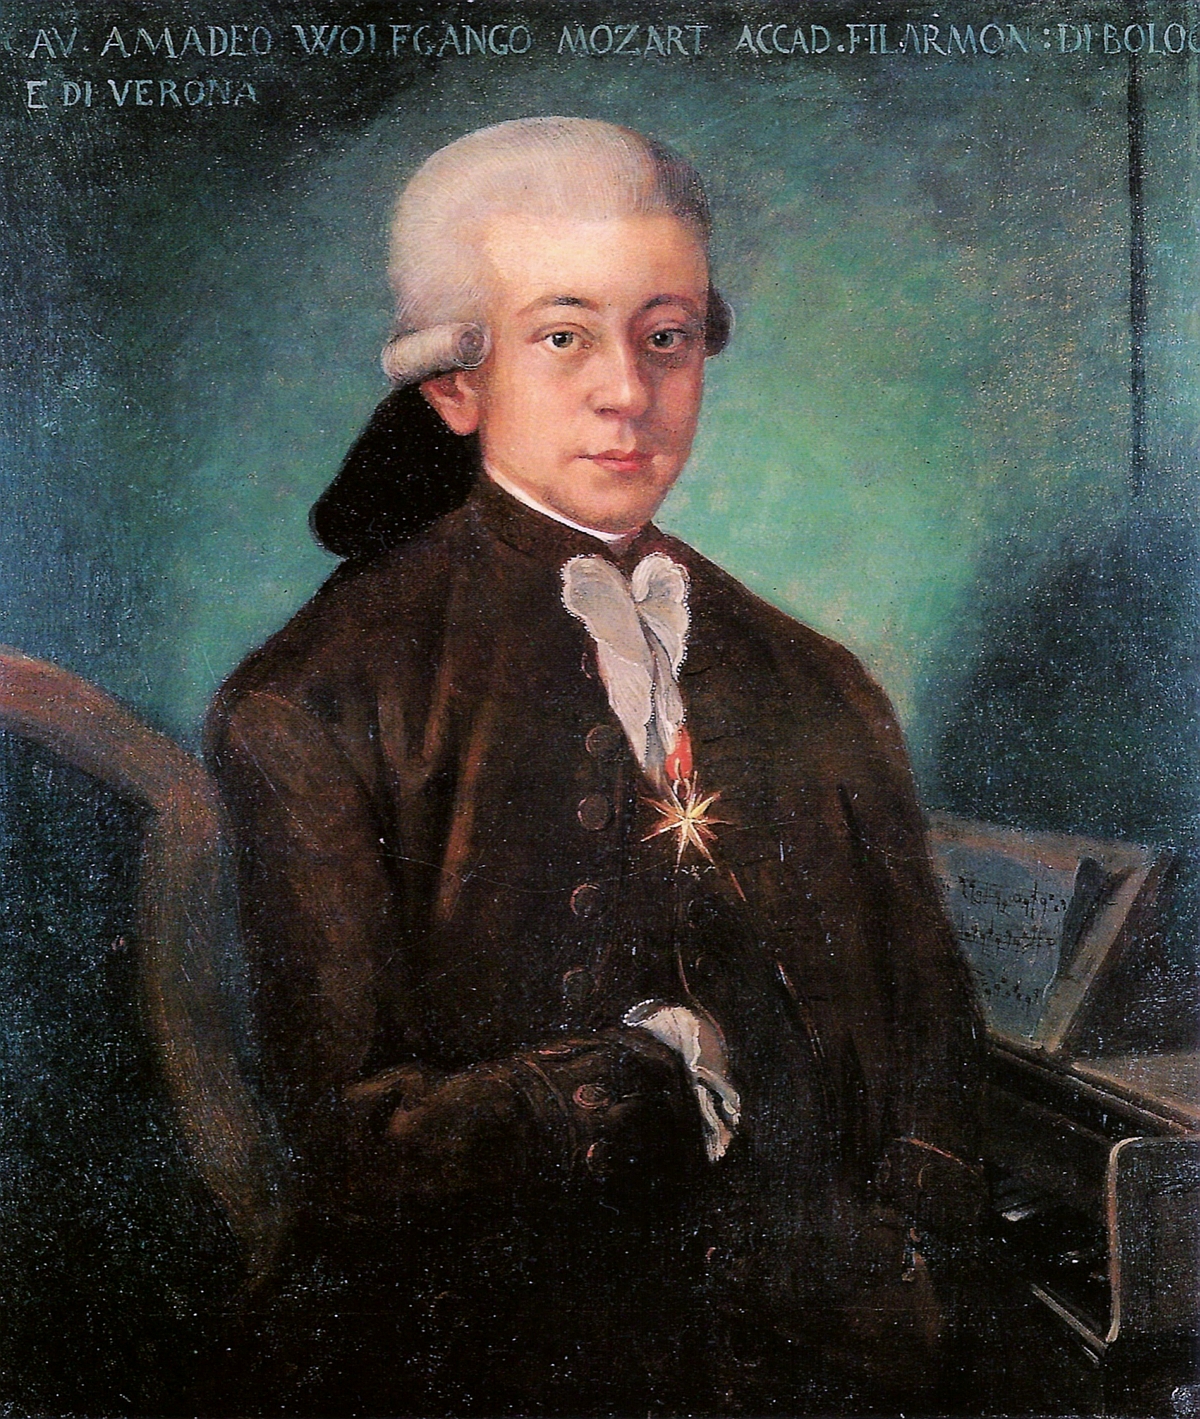 MOZART, portrait connu sous le nom de «Mozart de Bologne», clicquer pour une vue agrandie